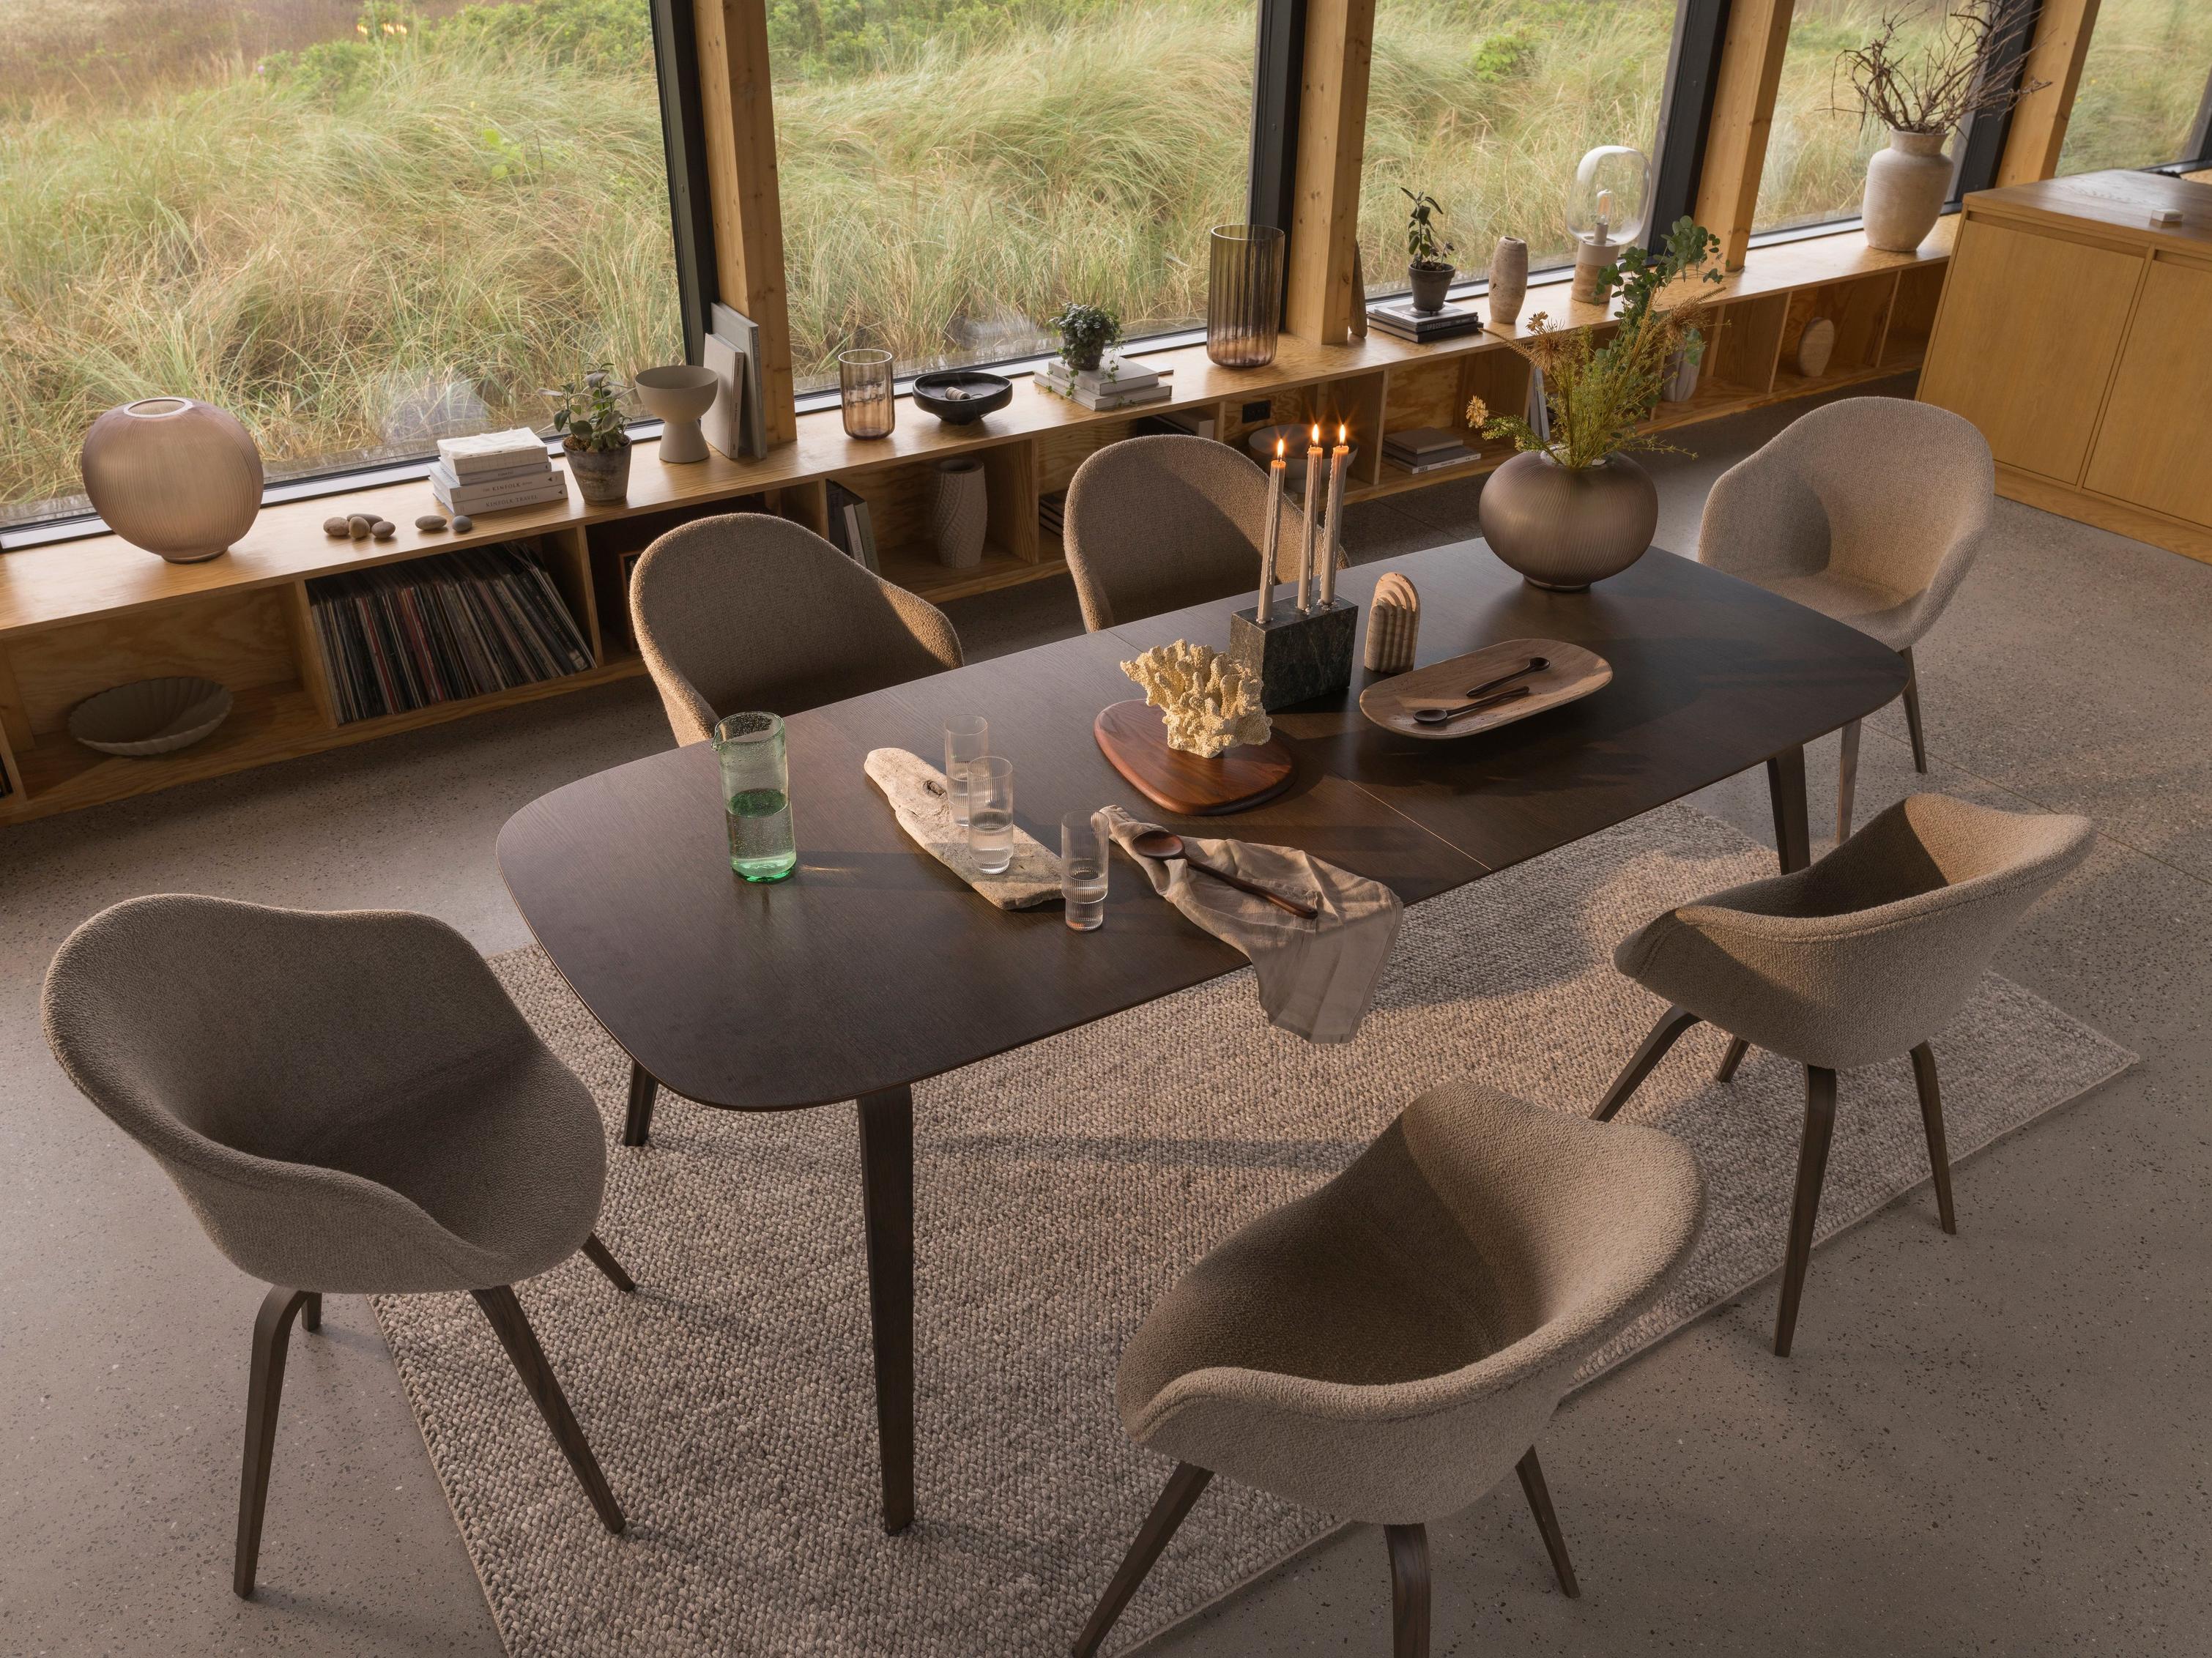 Une salle à manger organique avec des éléments naturels tels que la table de repas et les chaises Hauge.